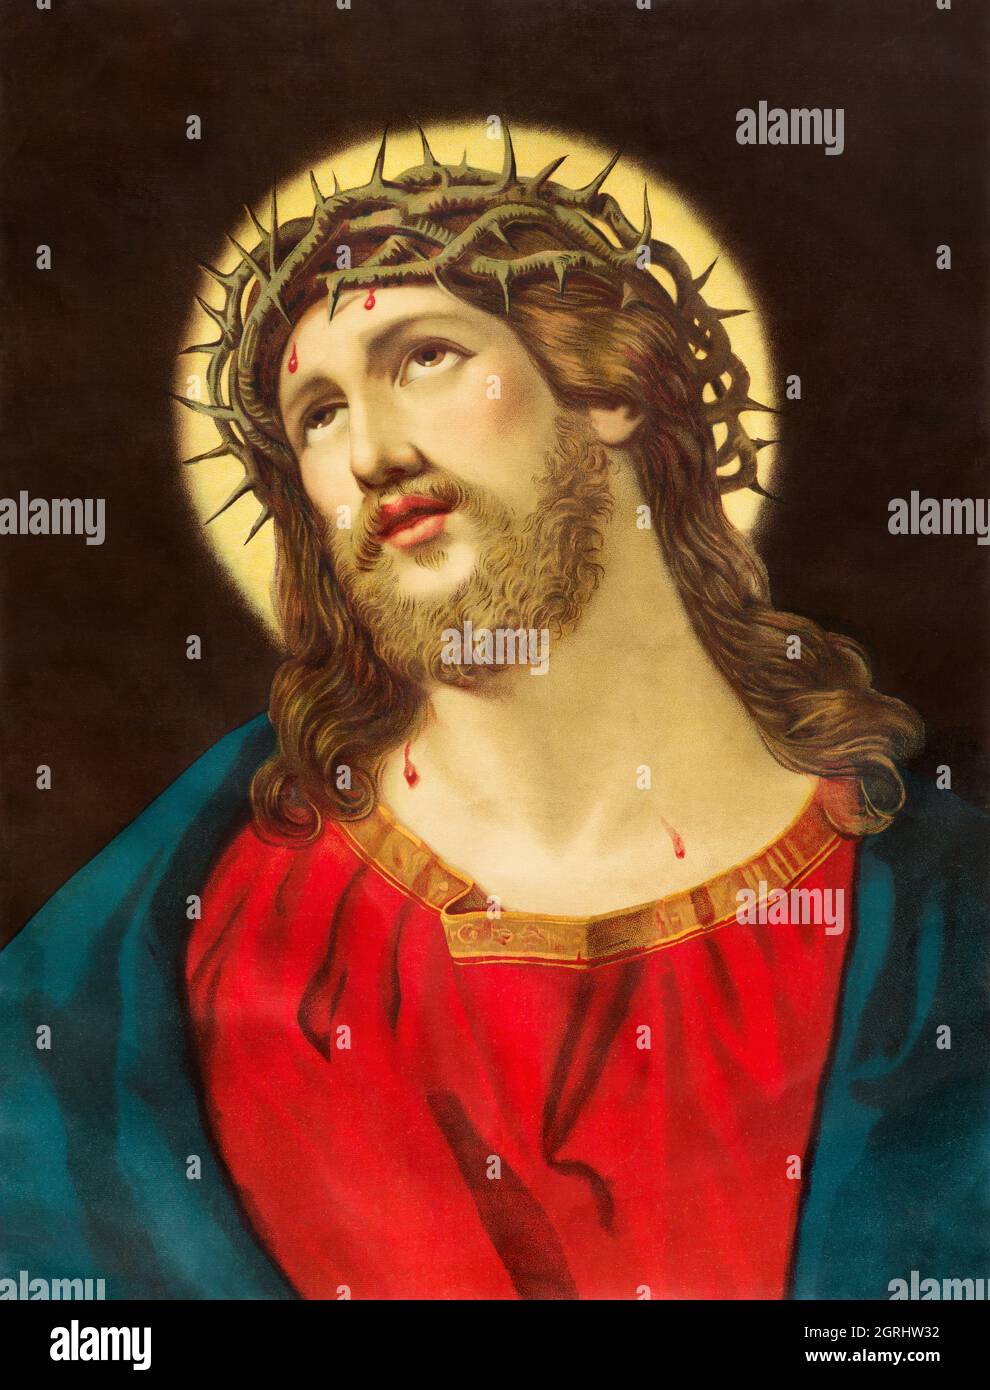 BRATISLAVA, SLOVACCHIA, 11 NOVEMBRE 2017: Immagine cattolica tipica di Gesù Cristo con la corona di spine originalemente disegnata da un artista sconosciuto Foto Stock